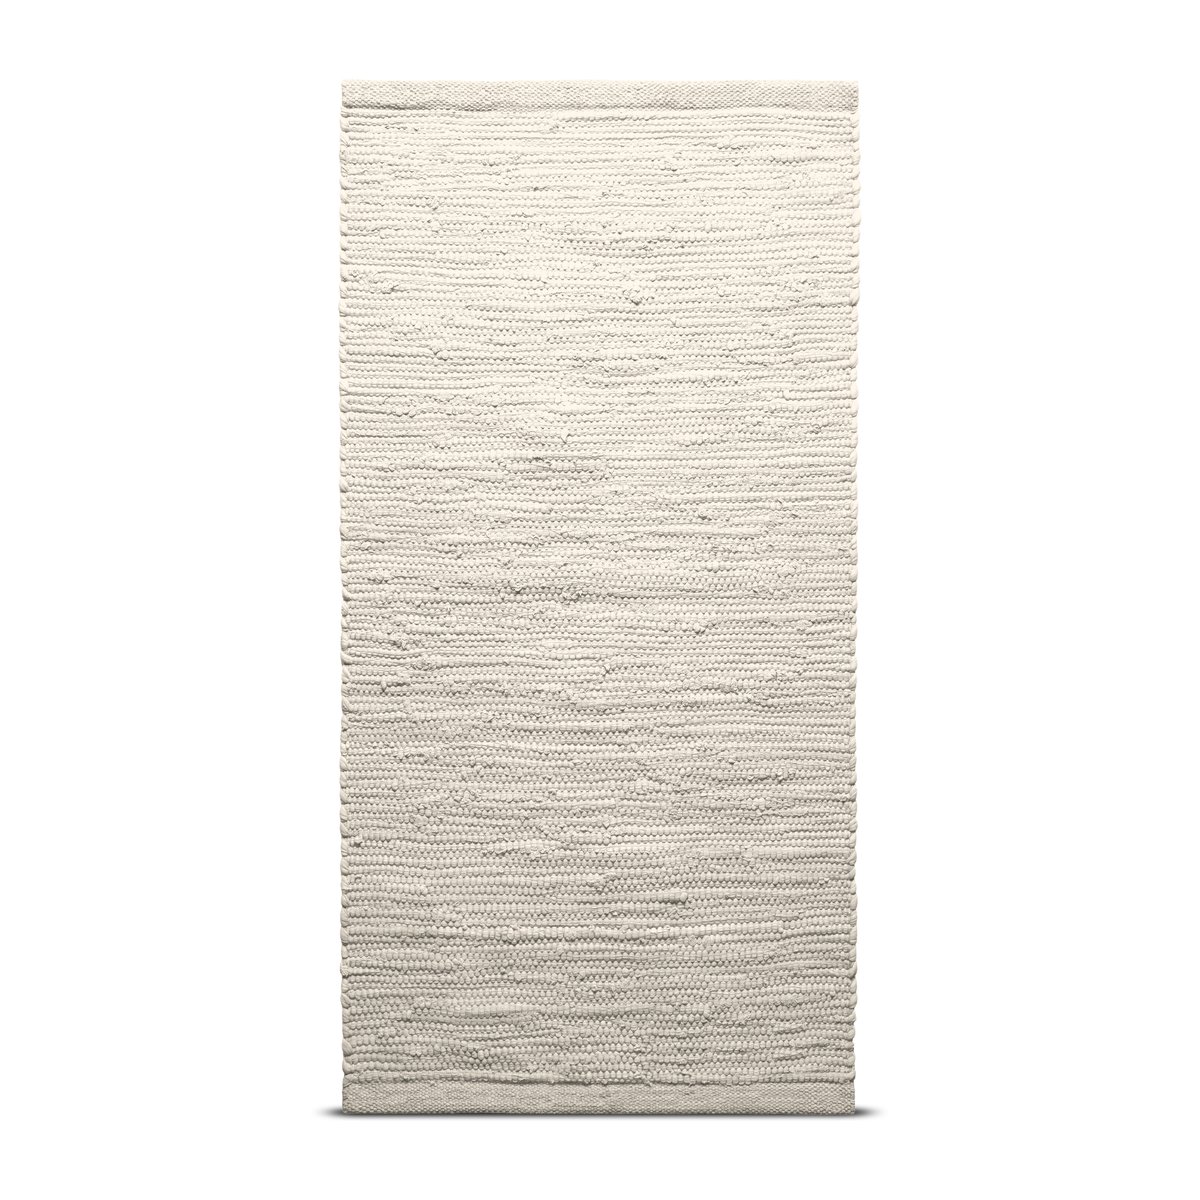 Rug Solid Cotton måtte 140x200 cm desert white (hvid)